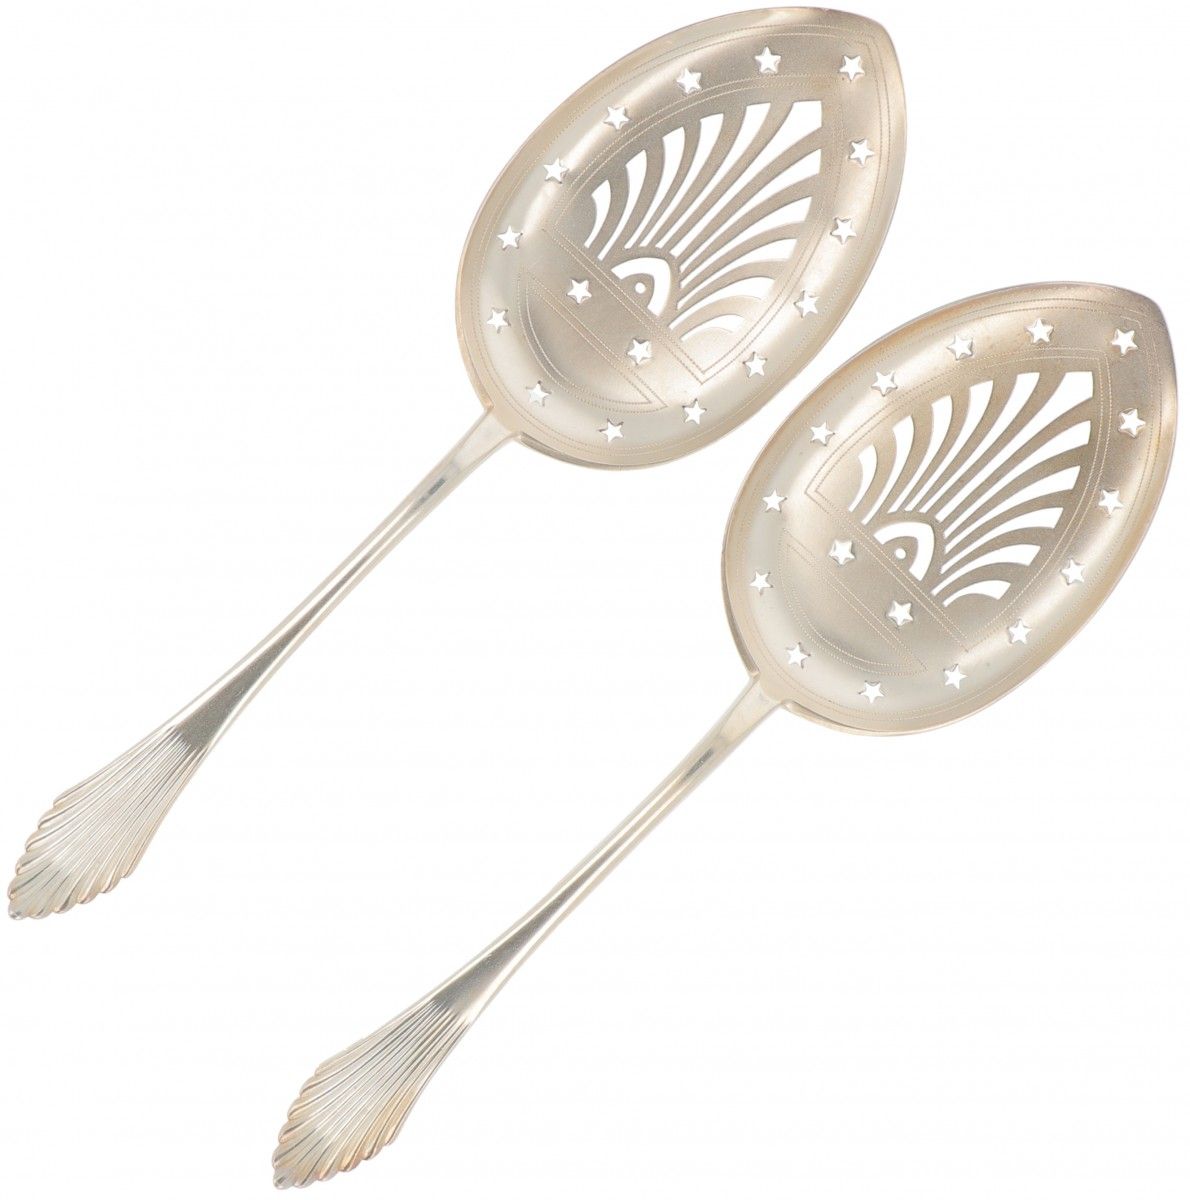 (2) piece set silver spoons. Mit fächerförmigem Griffabschluss und teilweise dur&hellip;